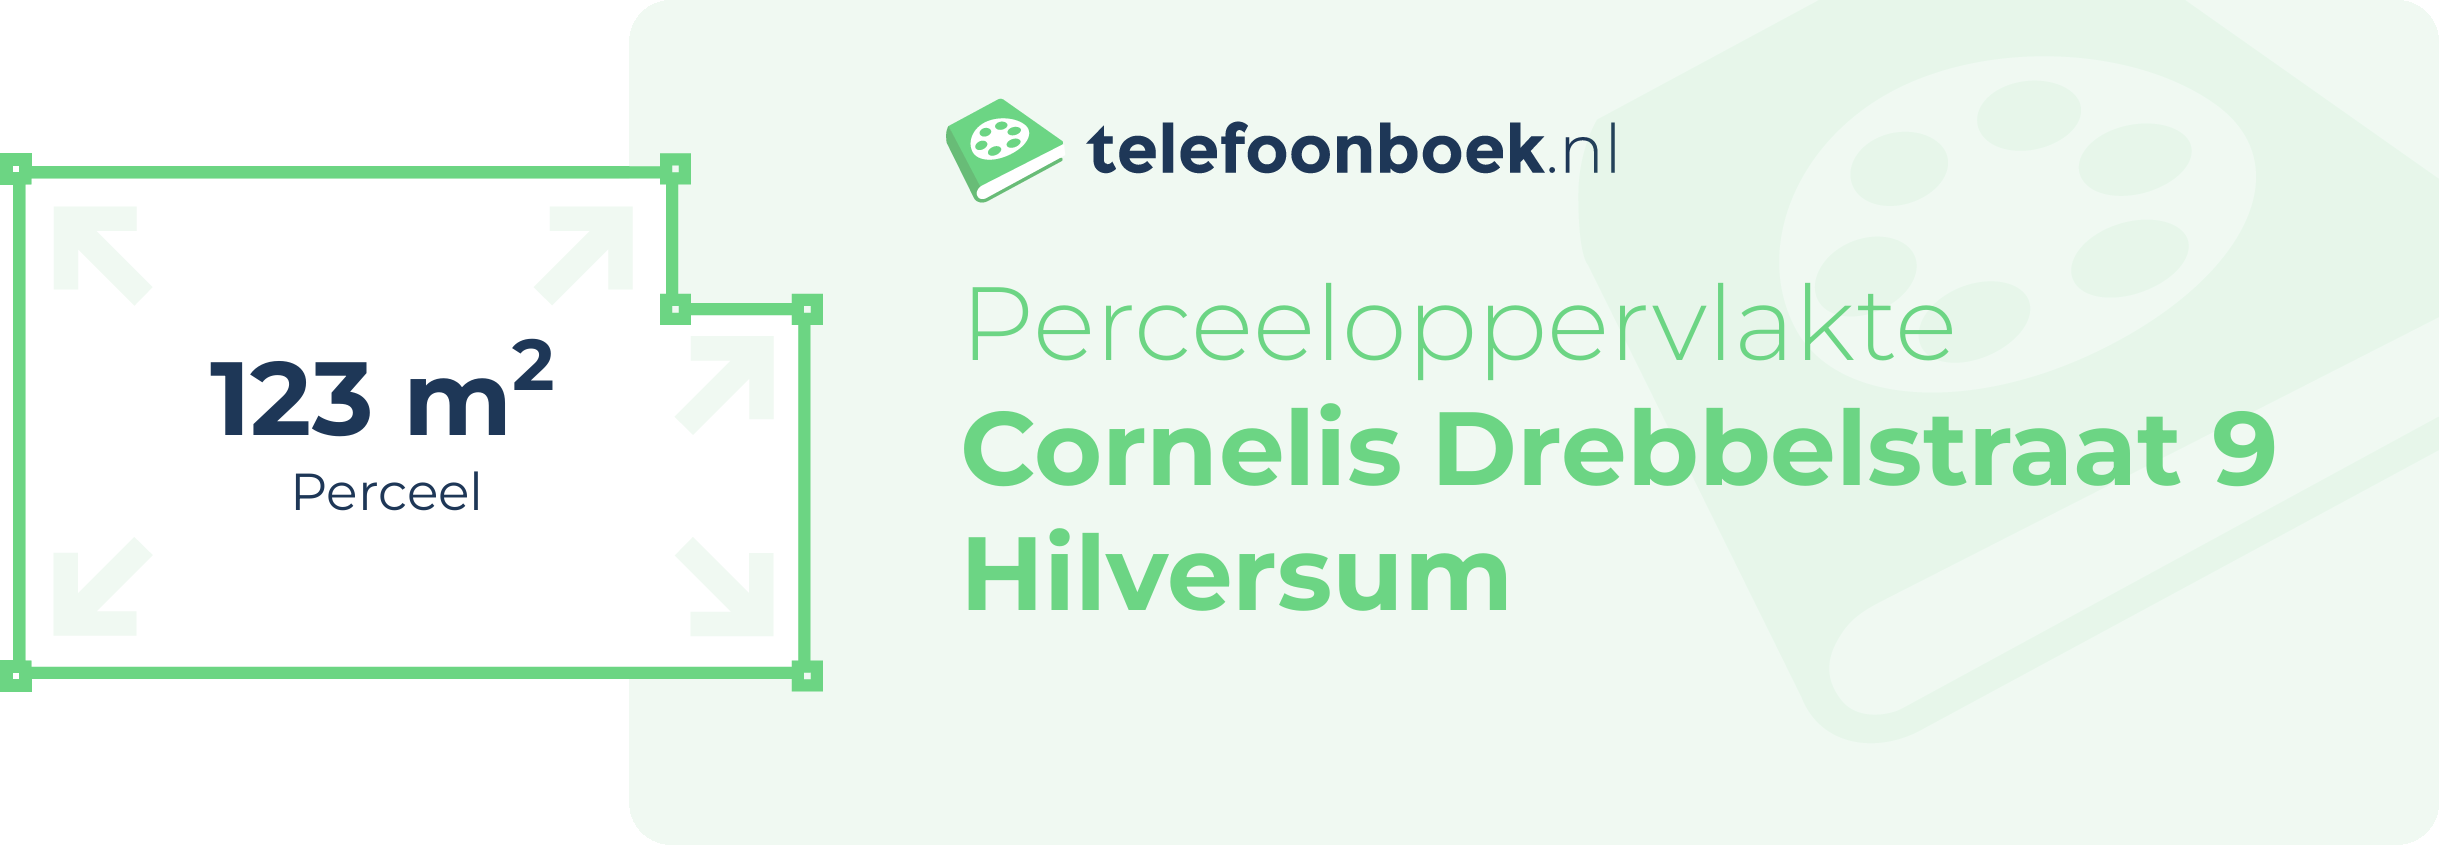 Perceeloppervlakte Cornelis Drebbelstraat 9 Hilversum